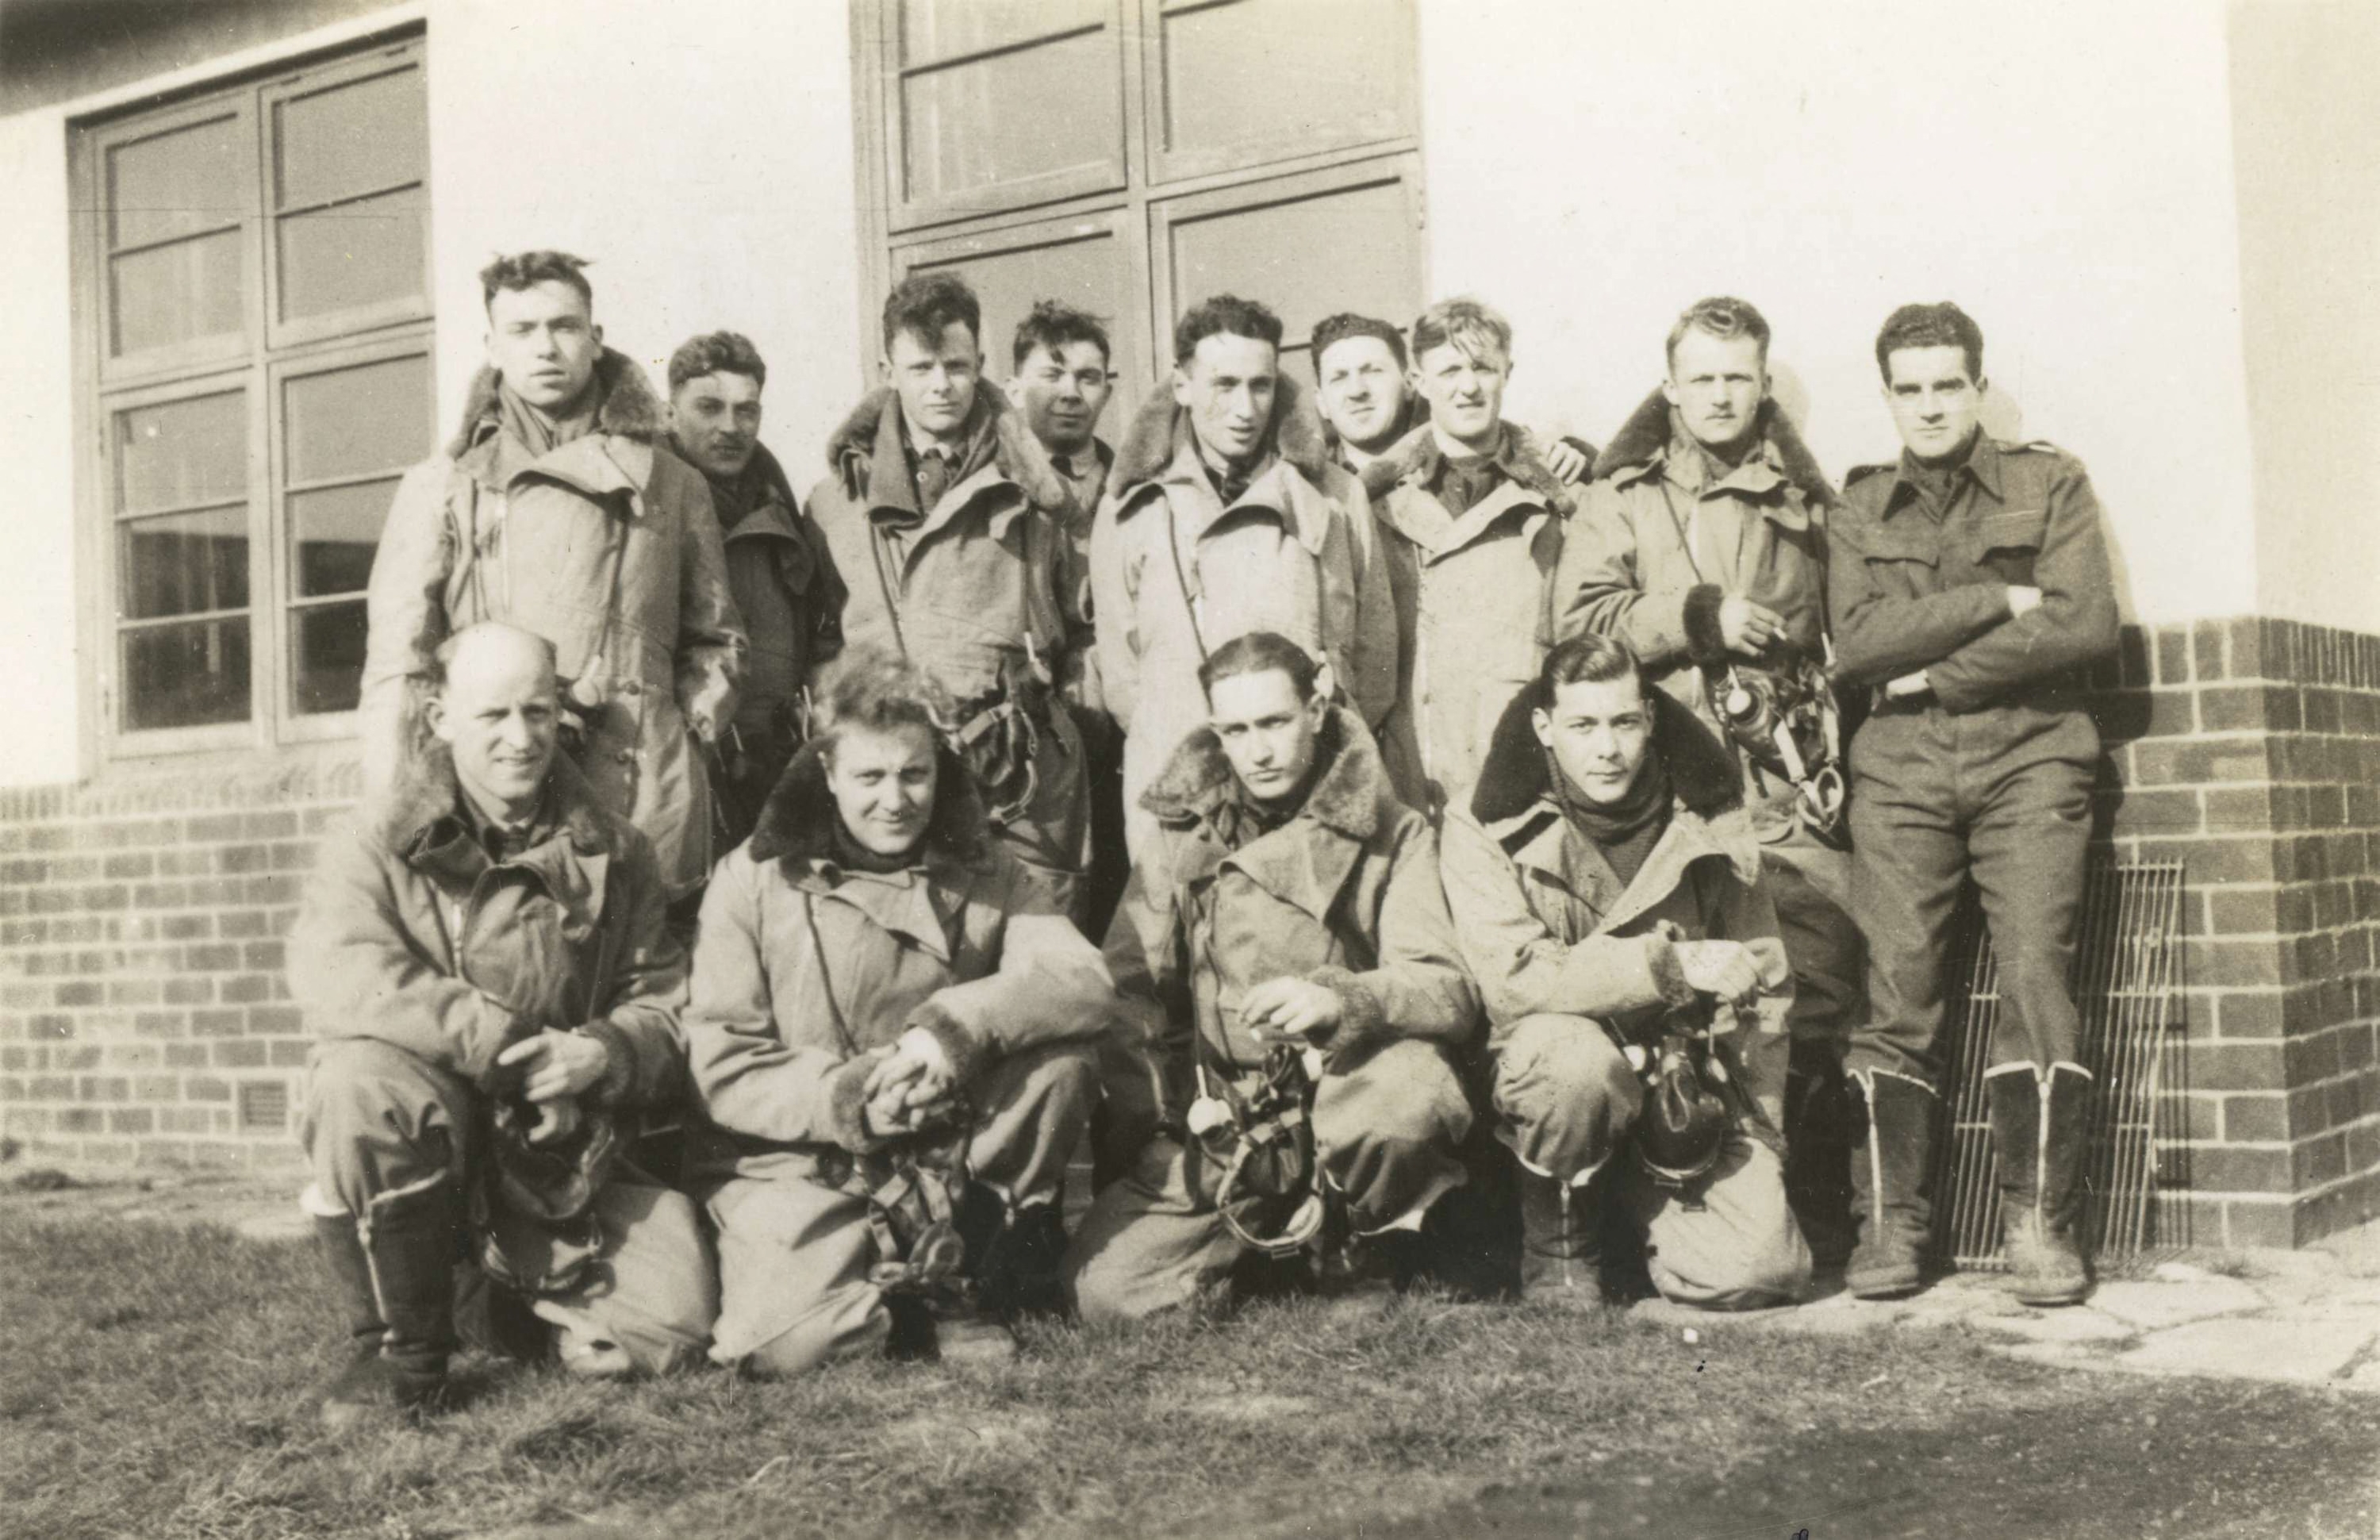 Rechts onderste rij zit Hugo Seelig, waarschijnlijk te Quebec, Canada, om met enkele andere Nederlanders een opleiding voor de RAF te volgen.